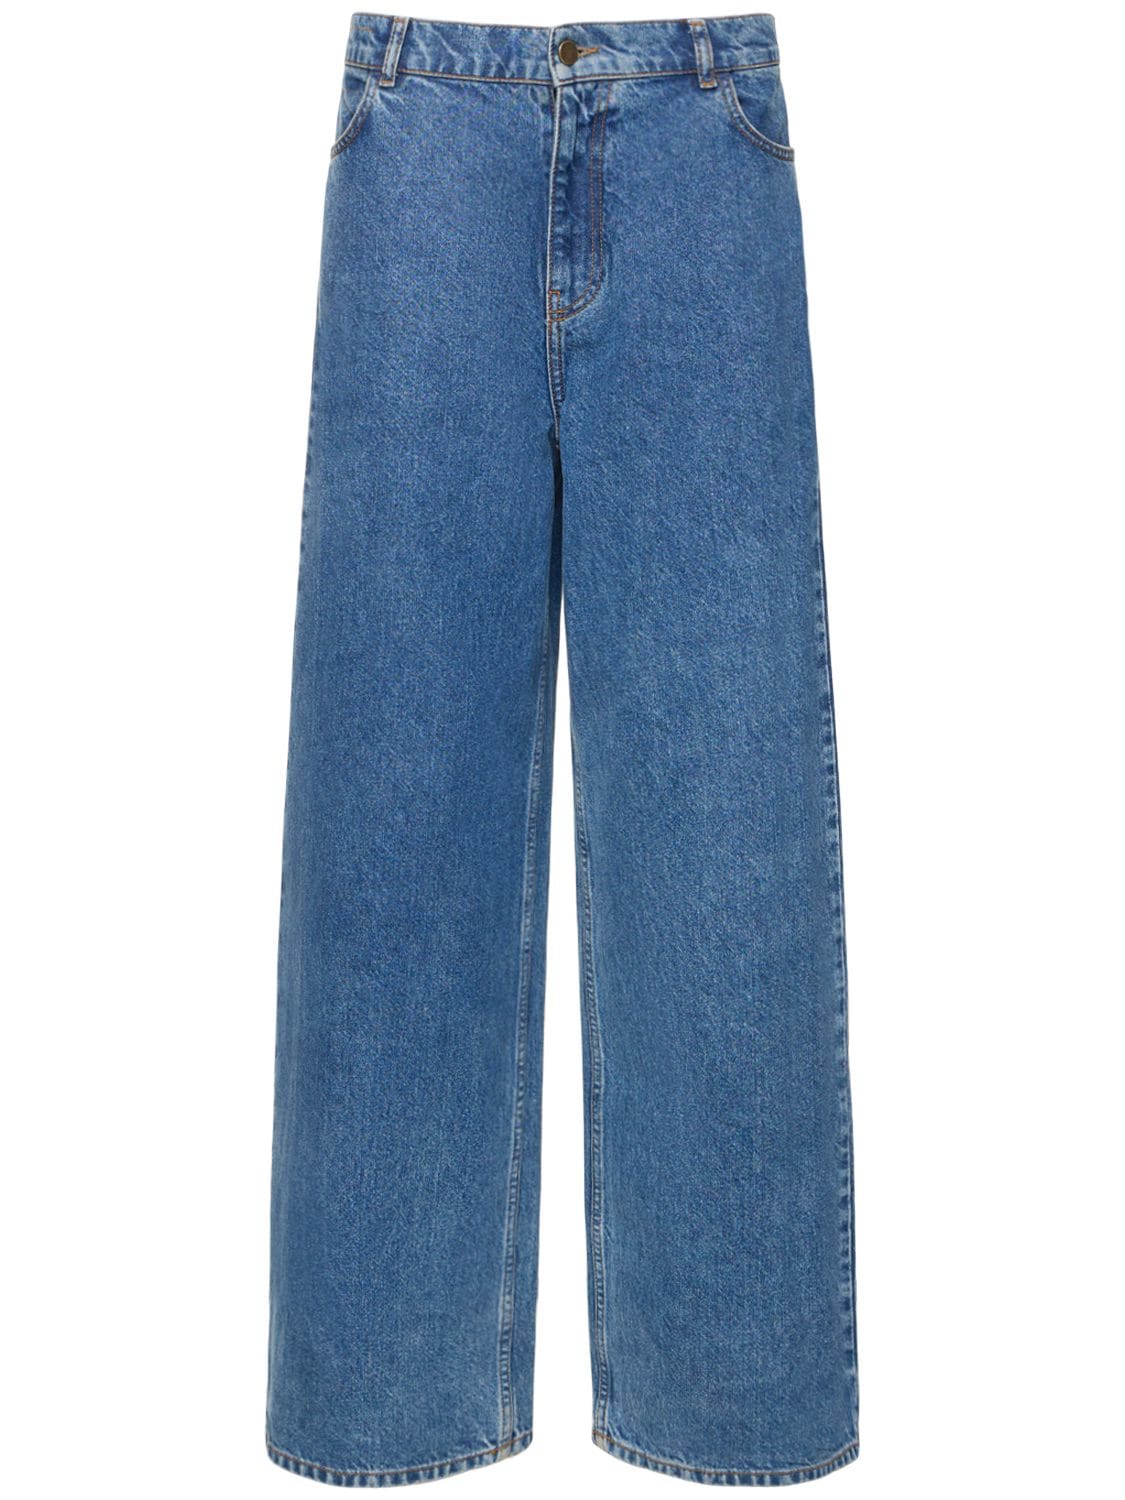 Philosophy Di Lorenzo Serafini Jeans Aus Baumwolldenim Mit Weitem Bein In Blau